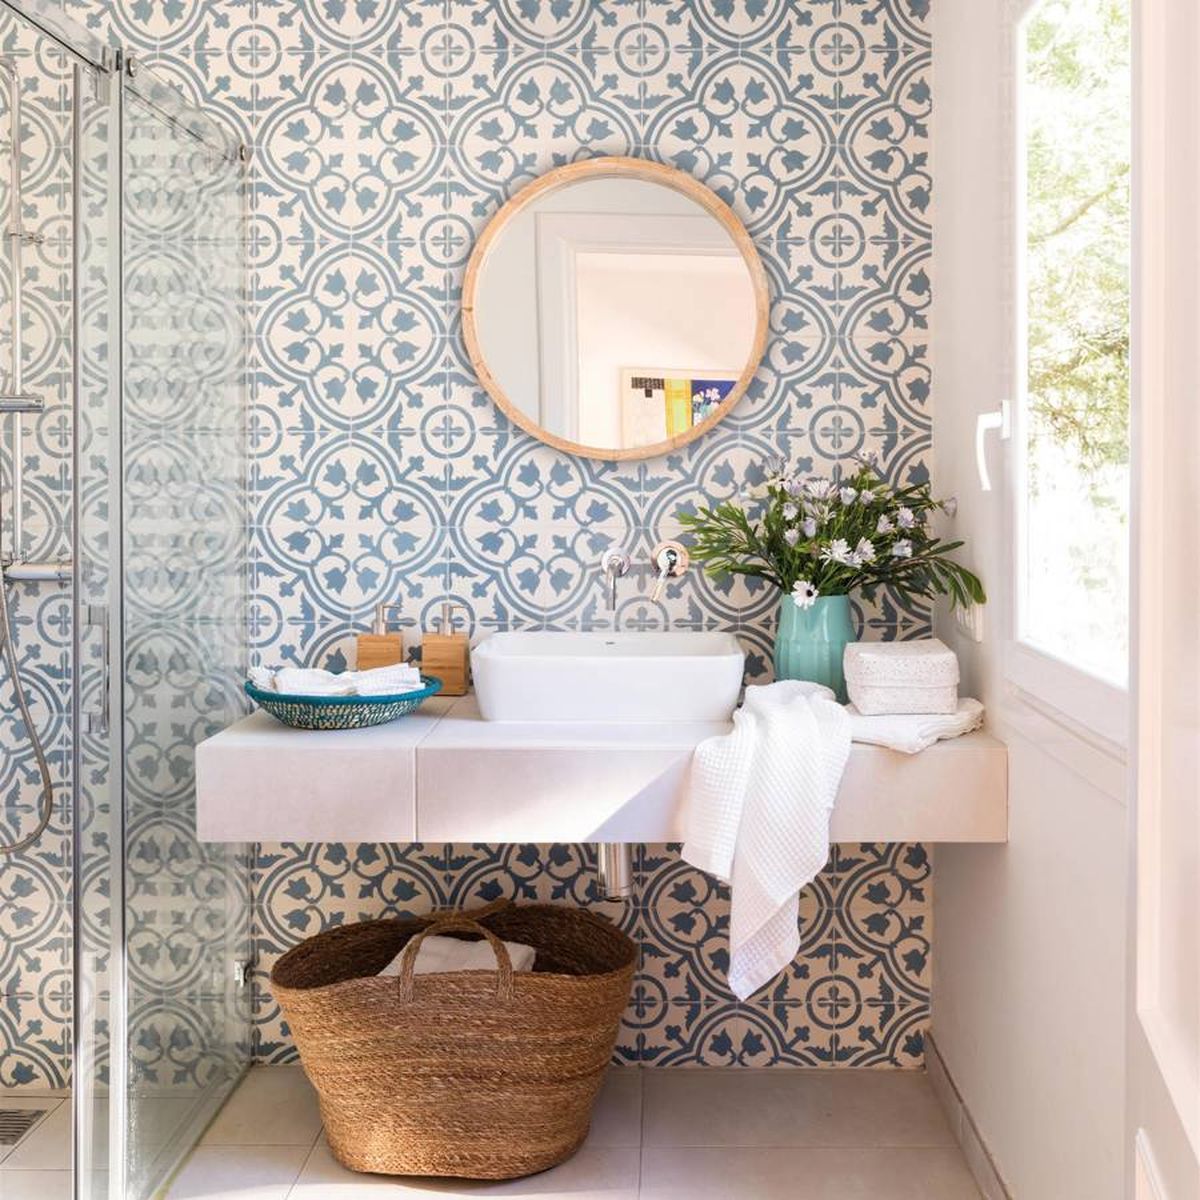 Cómo decorar las paredes del baño: azulejos, papel pintado